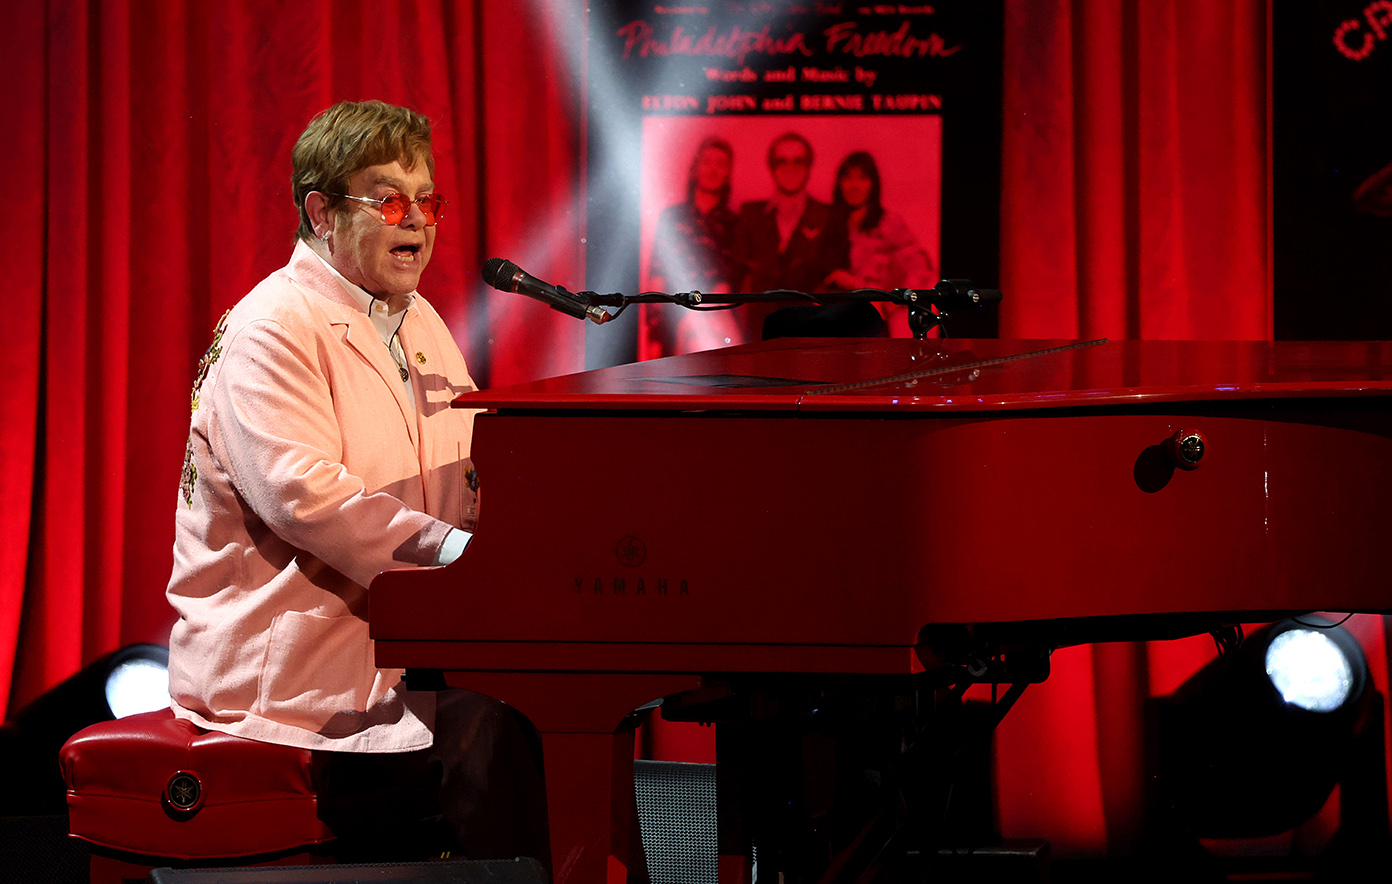 Elton John documentary to premiere at Toronto Film Festival